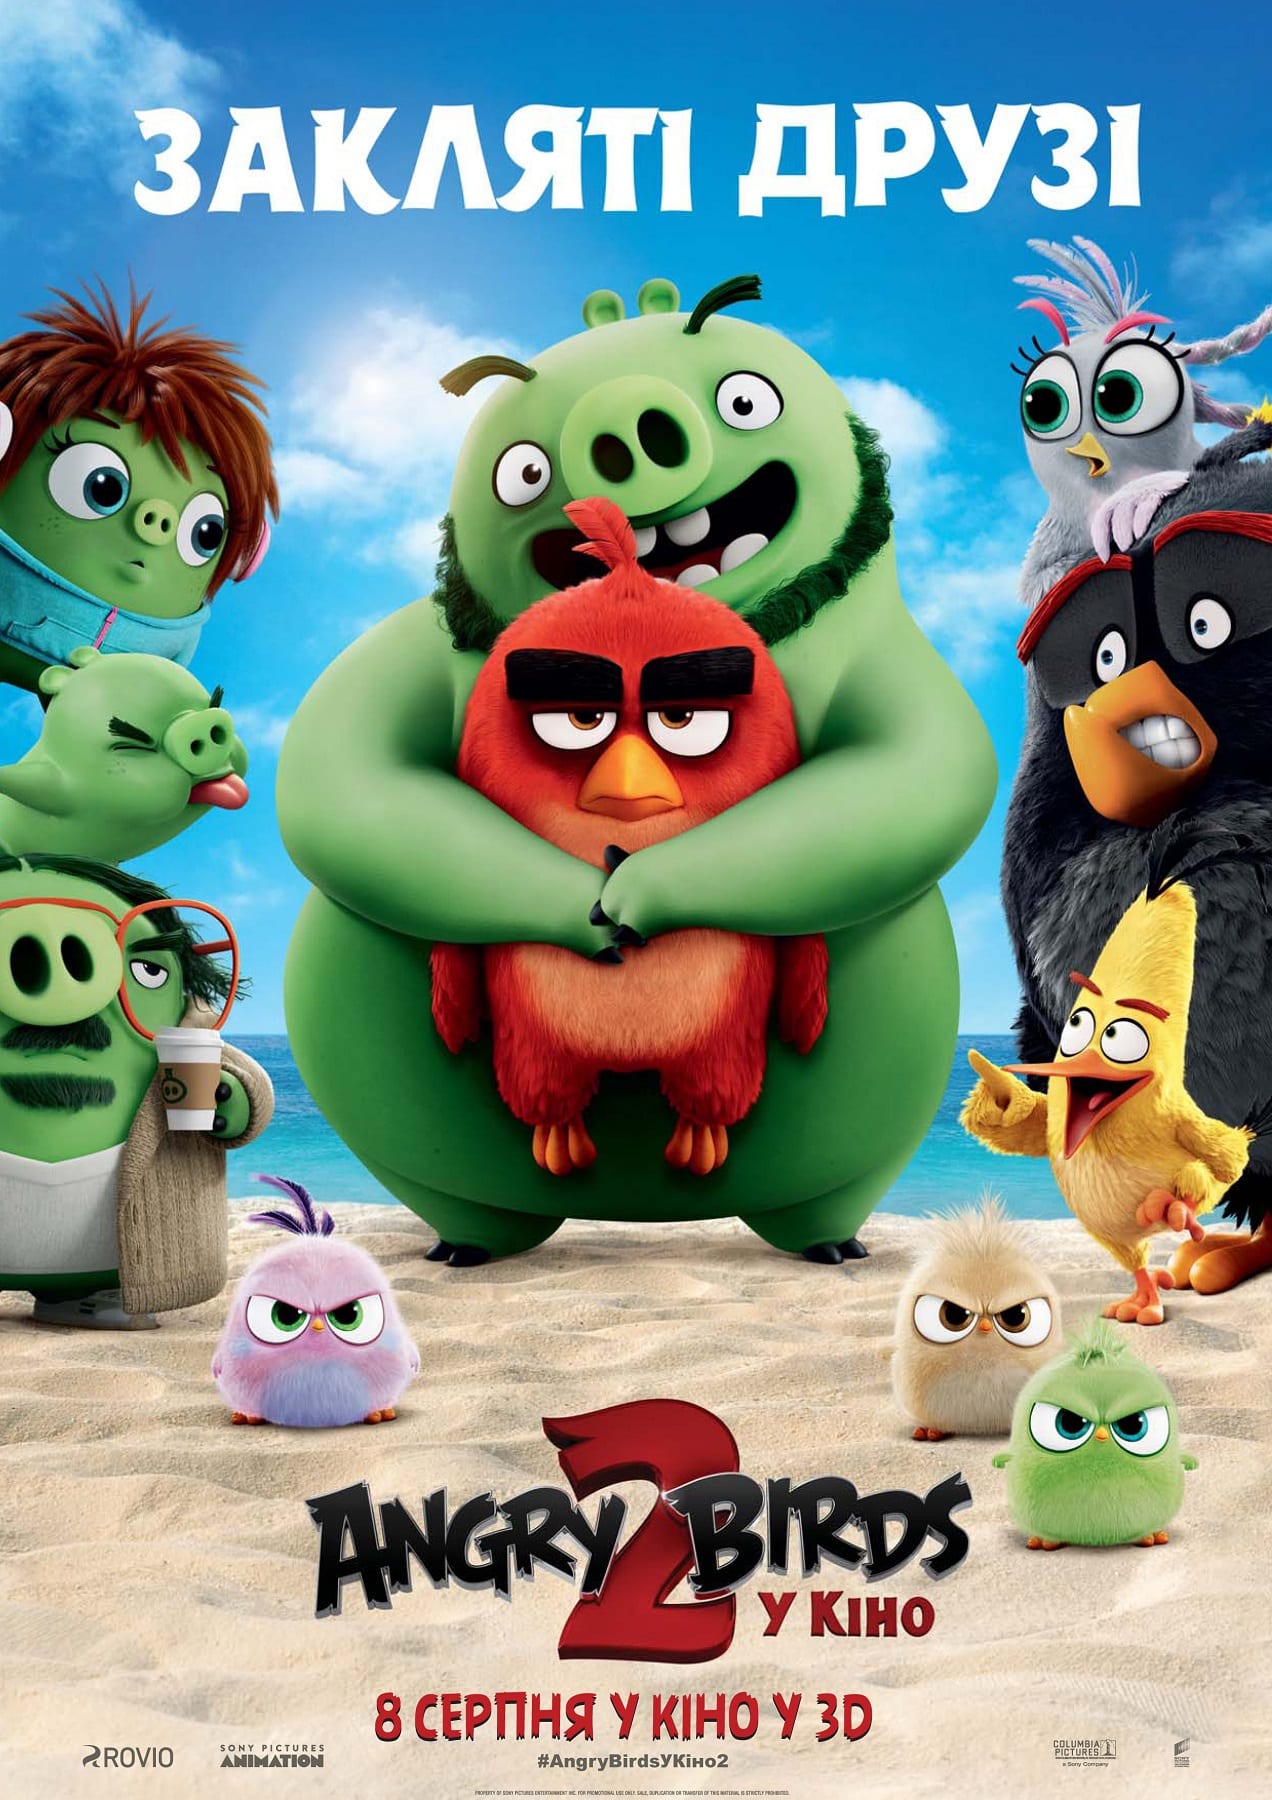 Angry Birds в кино 2 - Днепр, расписание сеансов, цены, купить билеты. Афиша Днепра